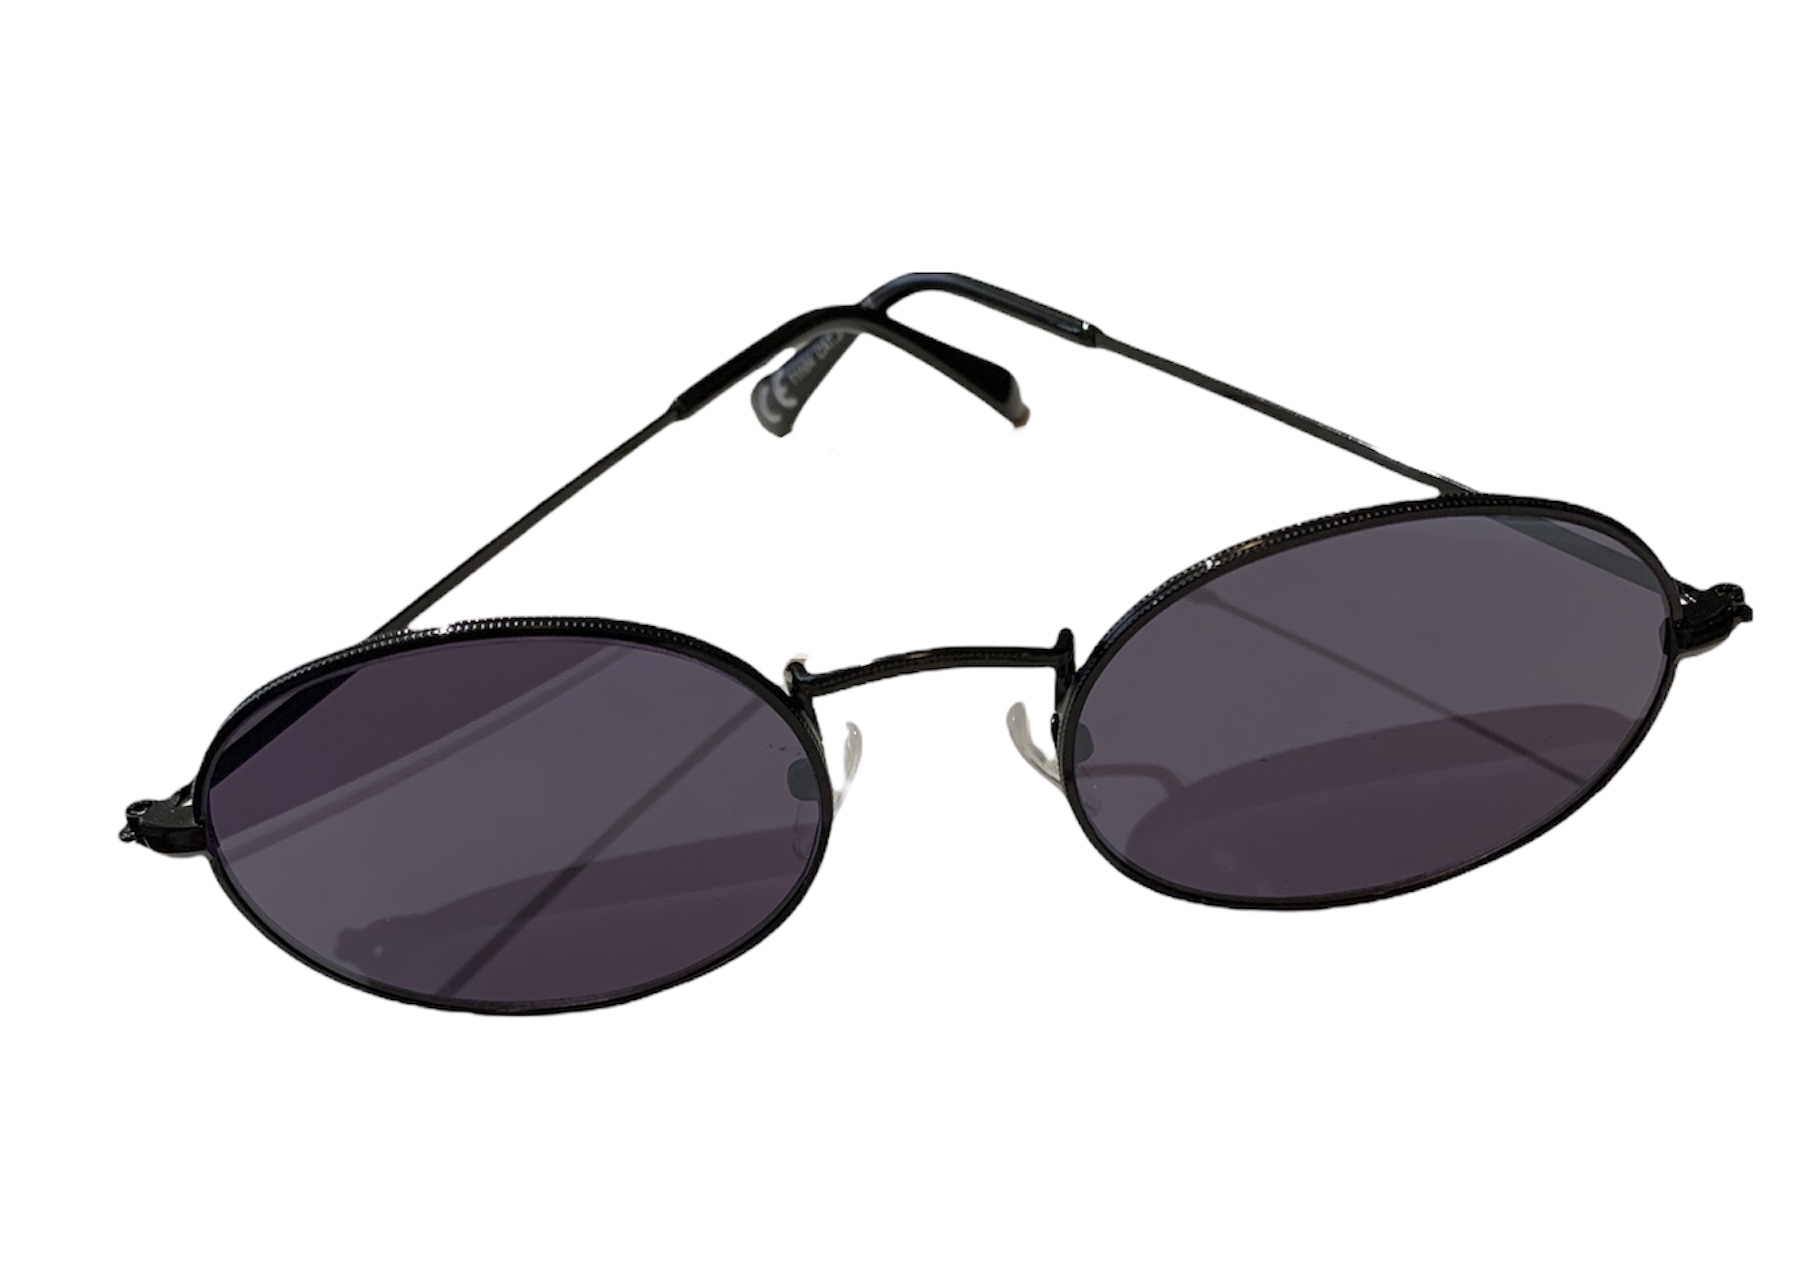 Solbriller Ovale glas - Sort-Sort - SOLBRILLER Znoopy.dk